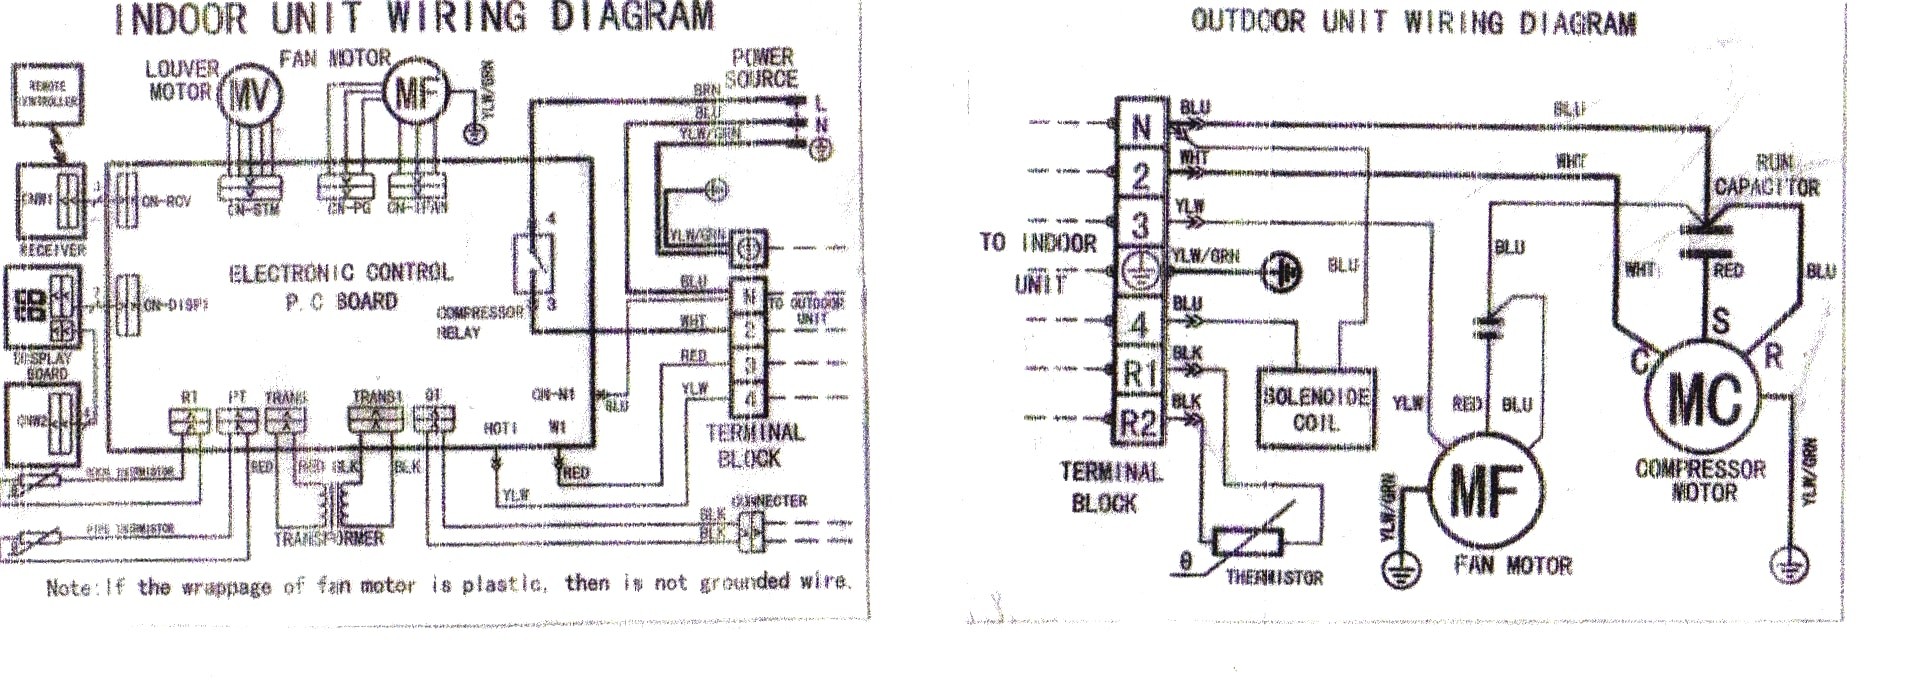 Full Size of Diagram goodman Air Handler Wiring Diagram For Handlergoodman Heat Pump Fantasticn Air